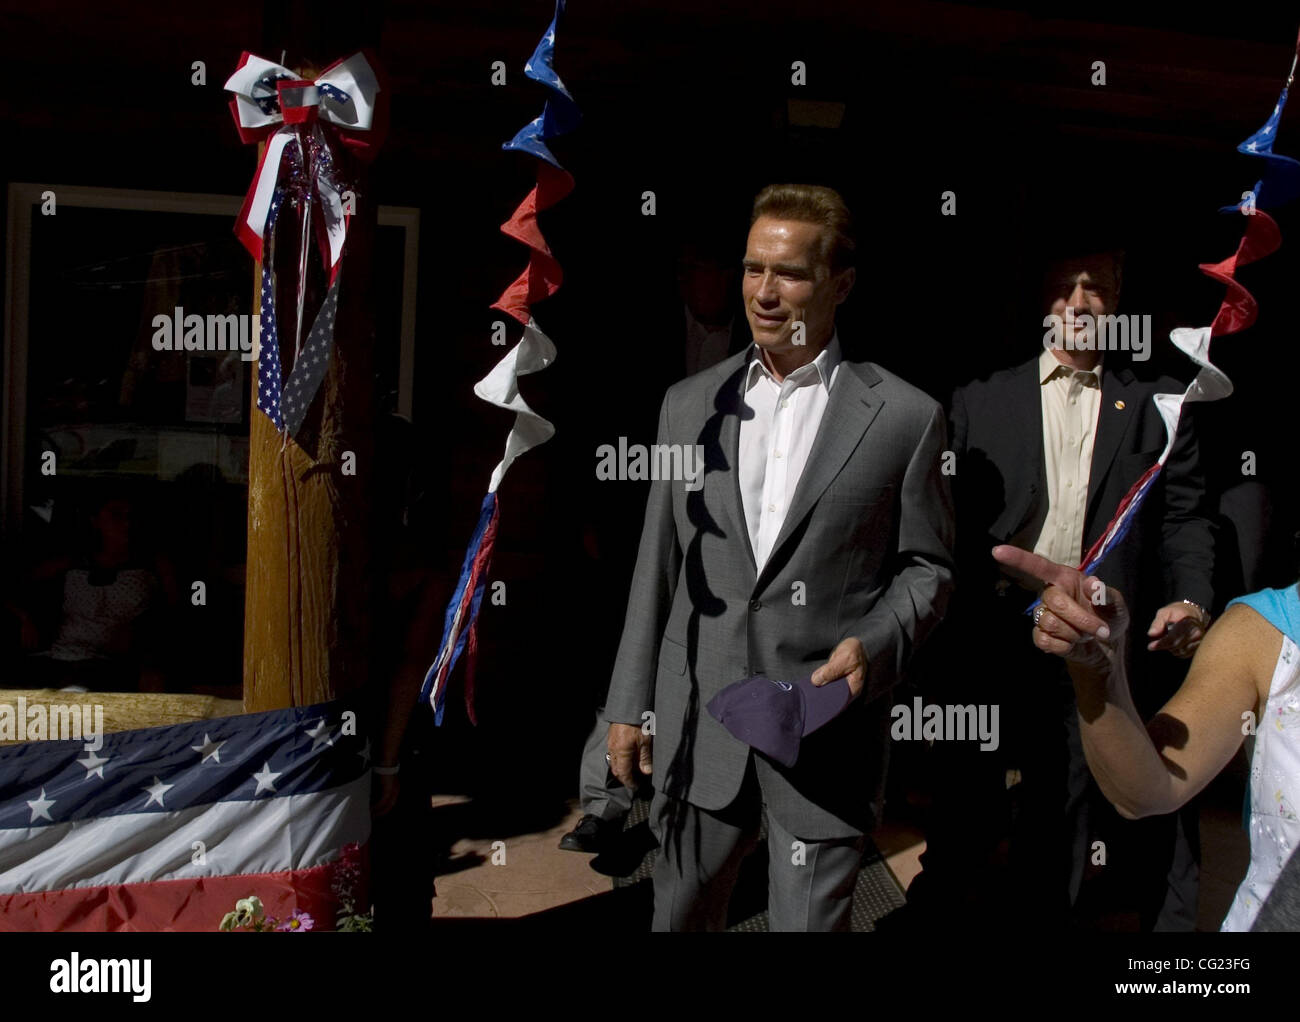 Kaliforniens Gouverneur Arnold Schwarzenegger lässt die Richardson-Gemischtwarenladen bei seinem Besuch in Camp Richardsonl in South Lake Tahoe, Kalifornien am Montagnachmittag. Der Gouverneur bat Menschen nicht zu bleiben weg von Urlaub South Lake Tahoe für die Ferienwoche. Fotografie von Jose Luis Villegas, Ju Stockfoto